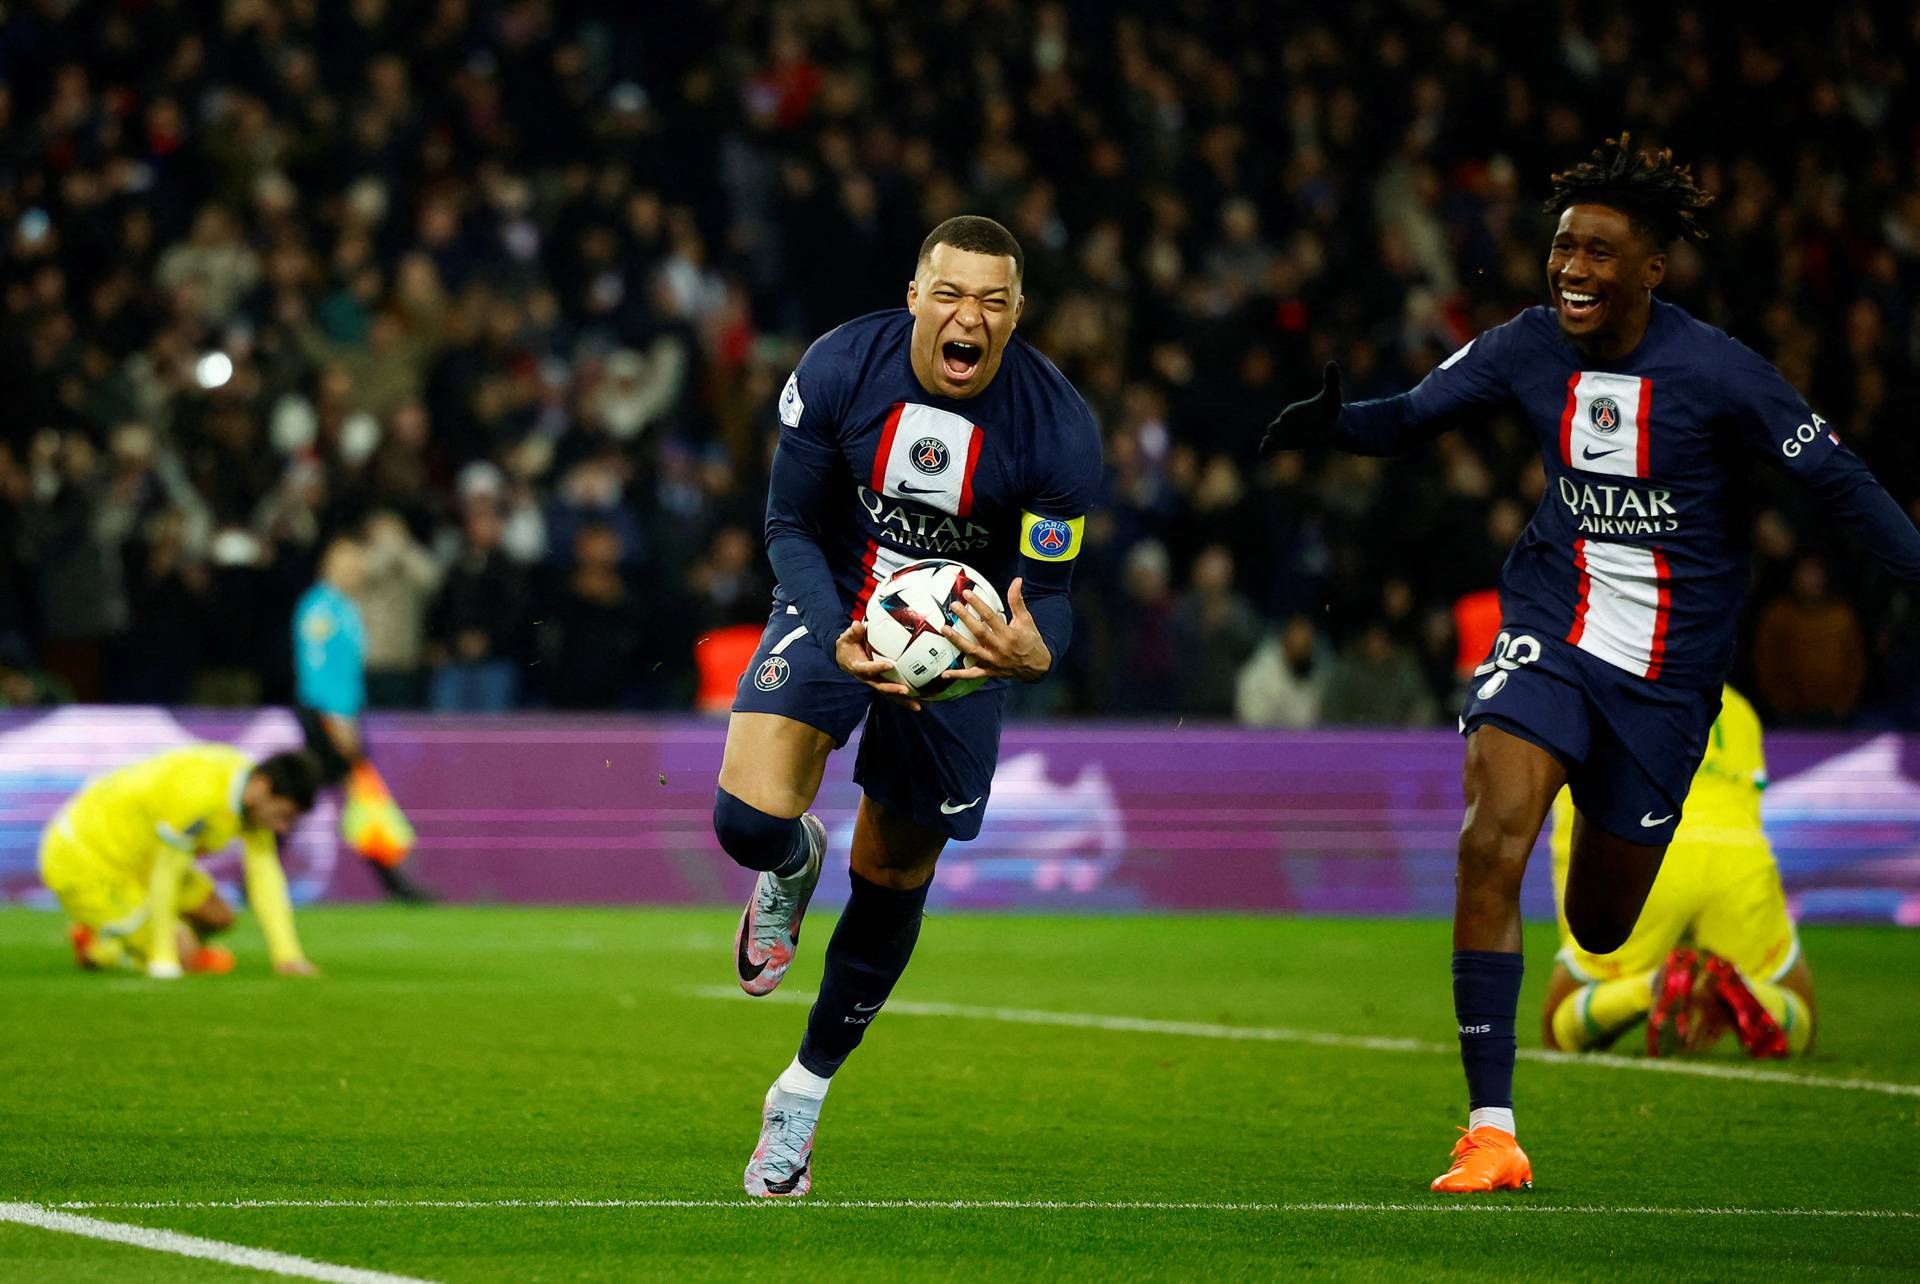 Ligue 1 - Paris St Germain v Nantes